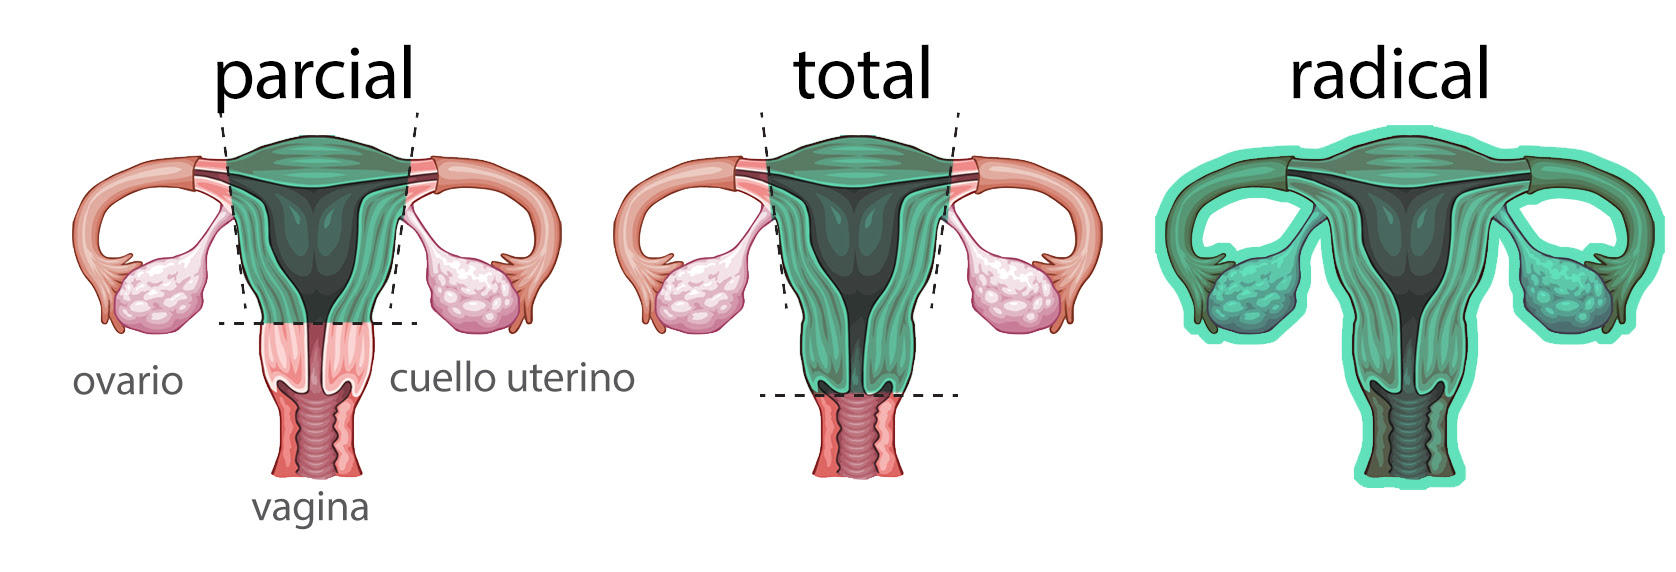 Resultado de imagen para histerectomia ginecologica